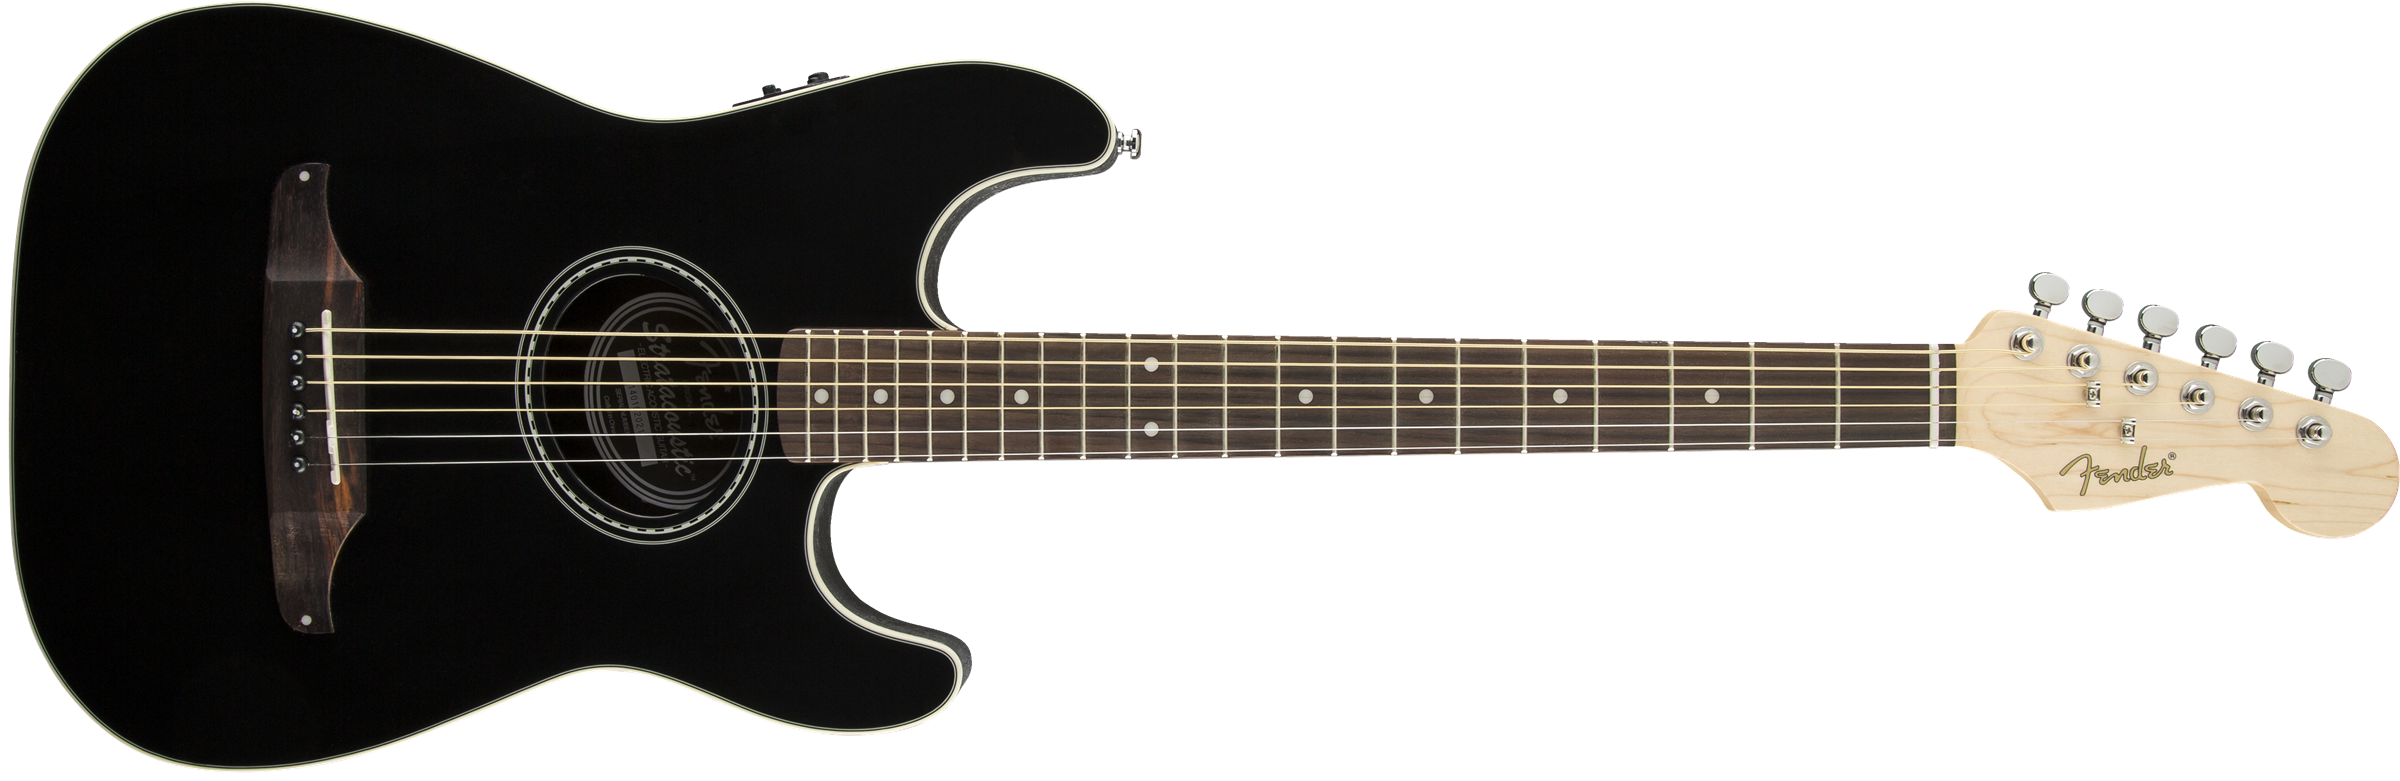 Fender Stratacoustic Standard (wal) - Black - Guitarra acústica & electro - Variation 4